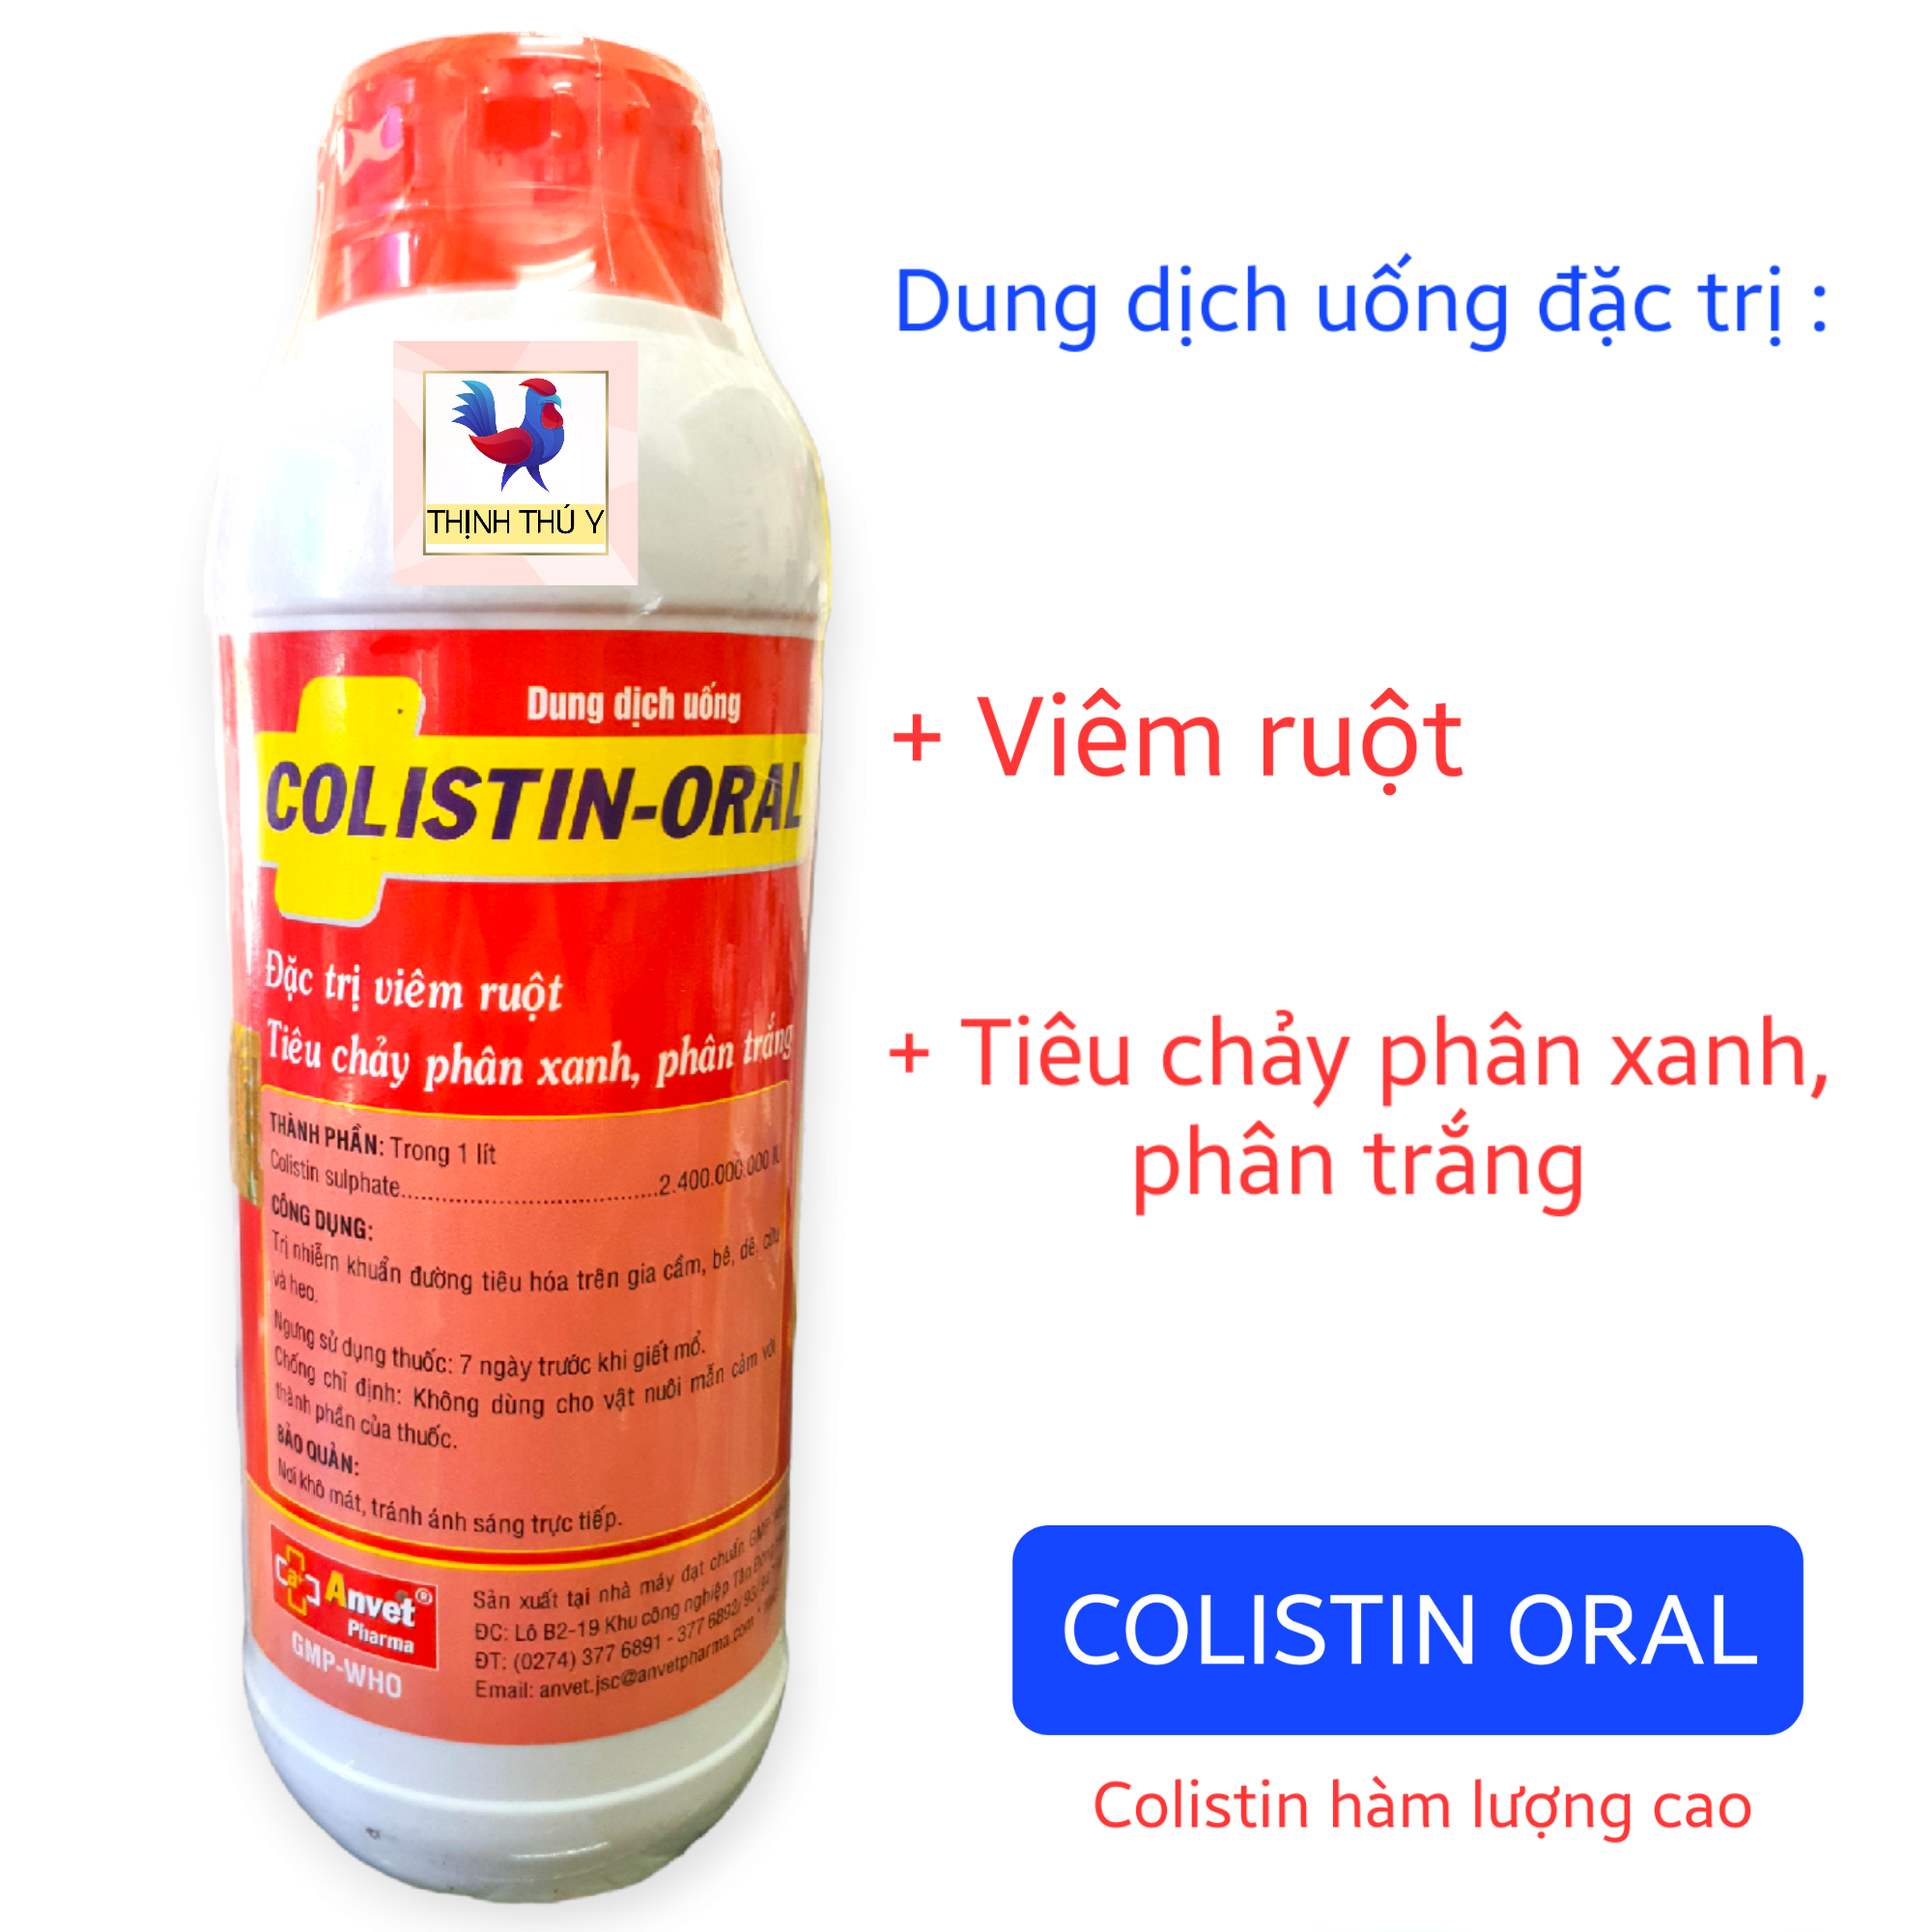 COLISTIN ORAL (Bình 1 lít) - Colistin hàm lượng cao. Đặc tr.i viêm ruột, tiêu chảy phân xanh, phân trắng cho gà đá, vật nuôi (Date 2026)